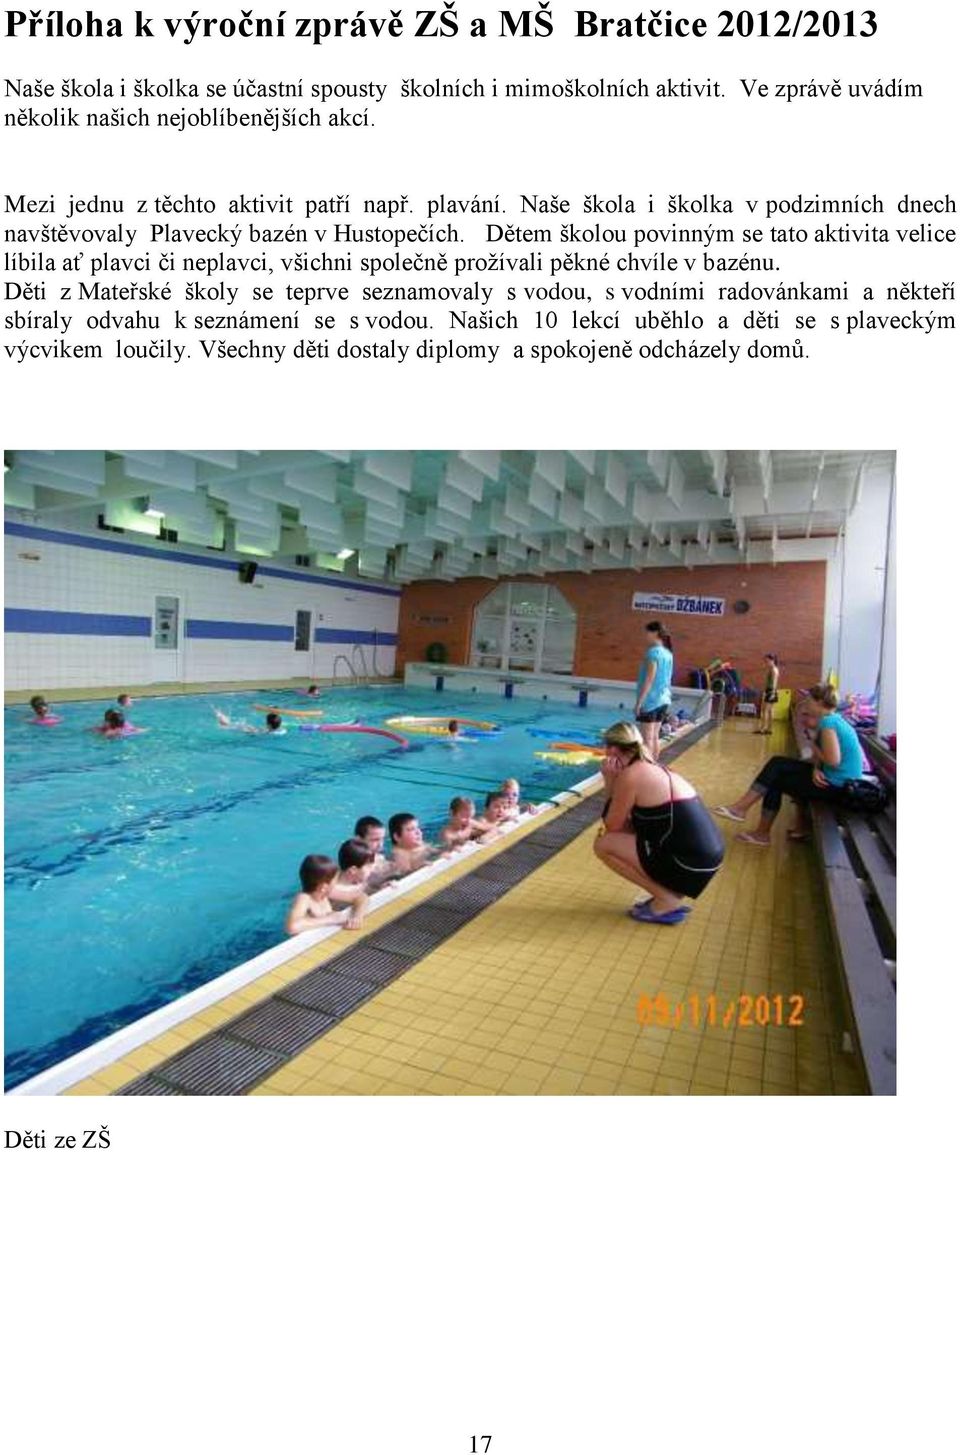 Naše škola i školka v podzimních dnech navštěvovaly Plavecký bazén v Hustopečích.